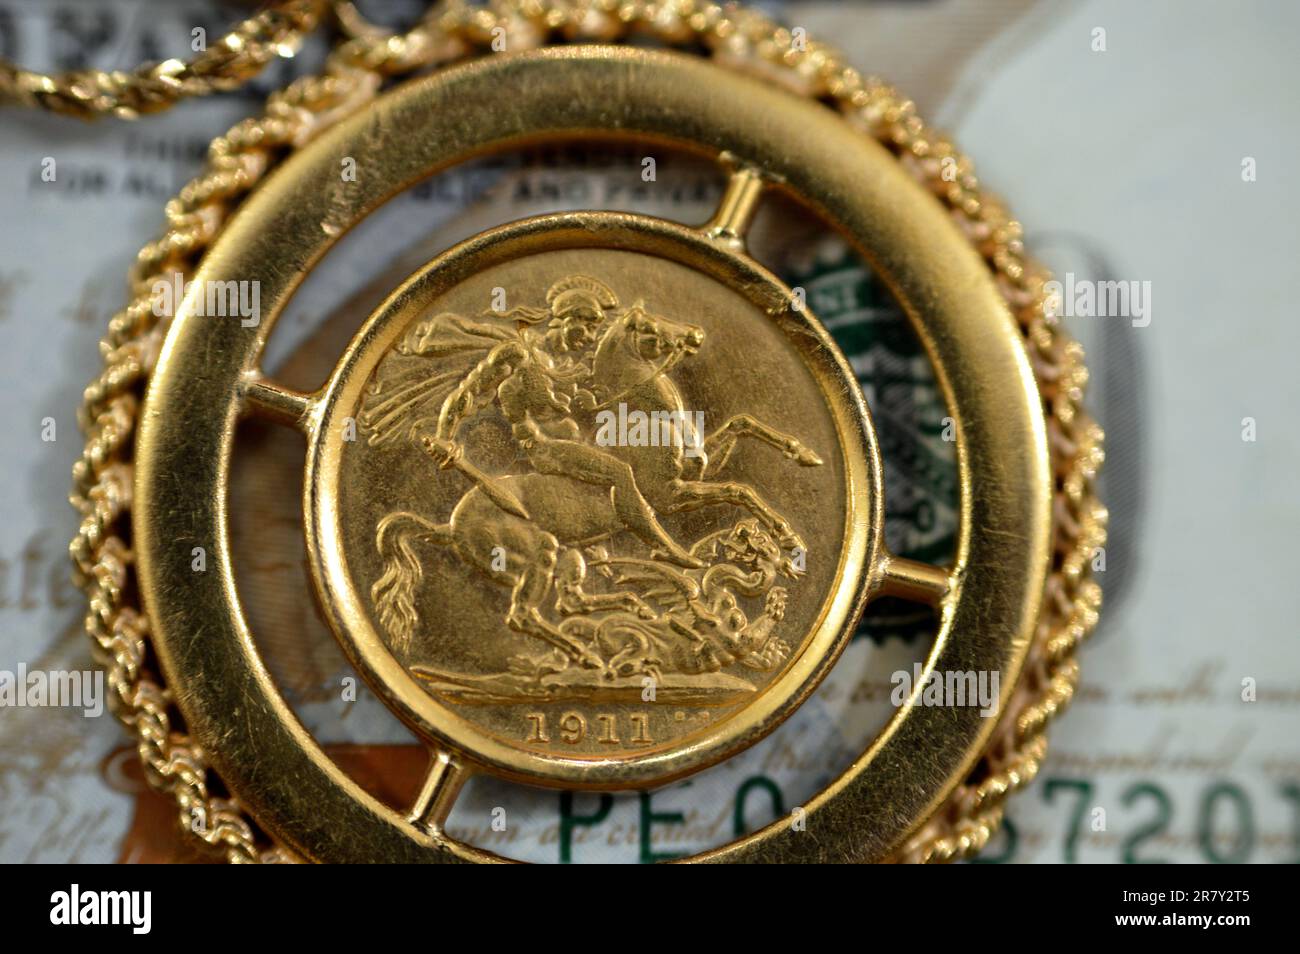 Bijoux ou bijoux sur USD dollars américains argent comptant billet, Sovereign British pièces de monnaie formes bullion pièces de monnaie présente George et dragon, or pr Banque D'Images